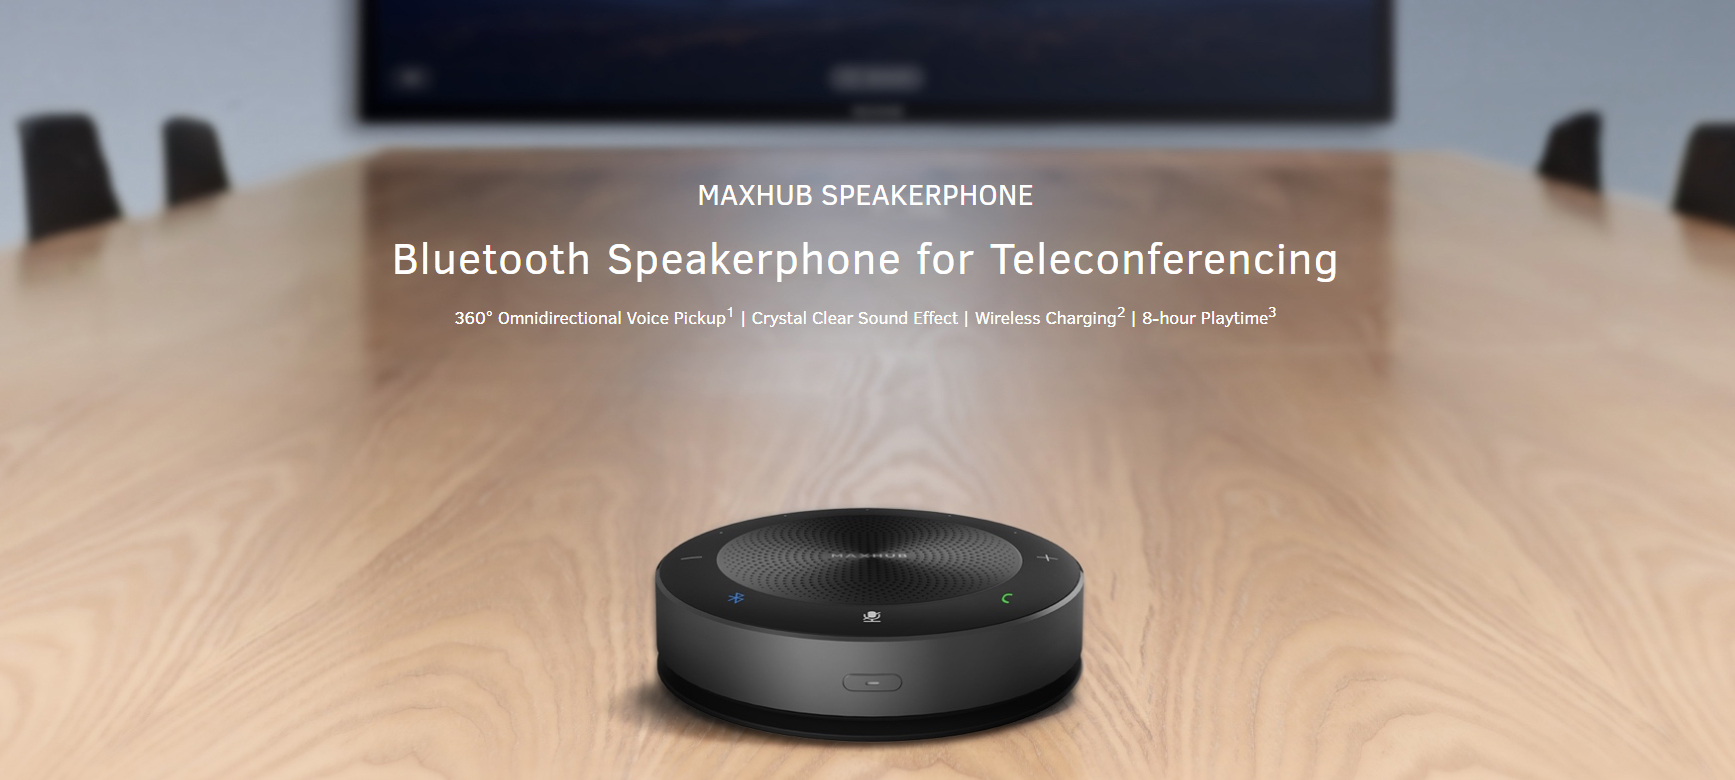 MAXHUB MXH-BM21 Wireless Speakerphone